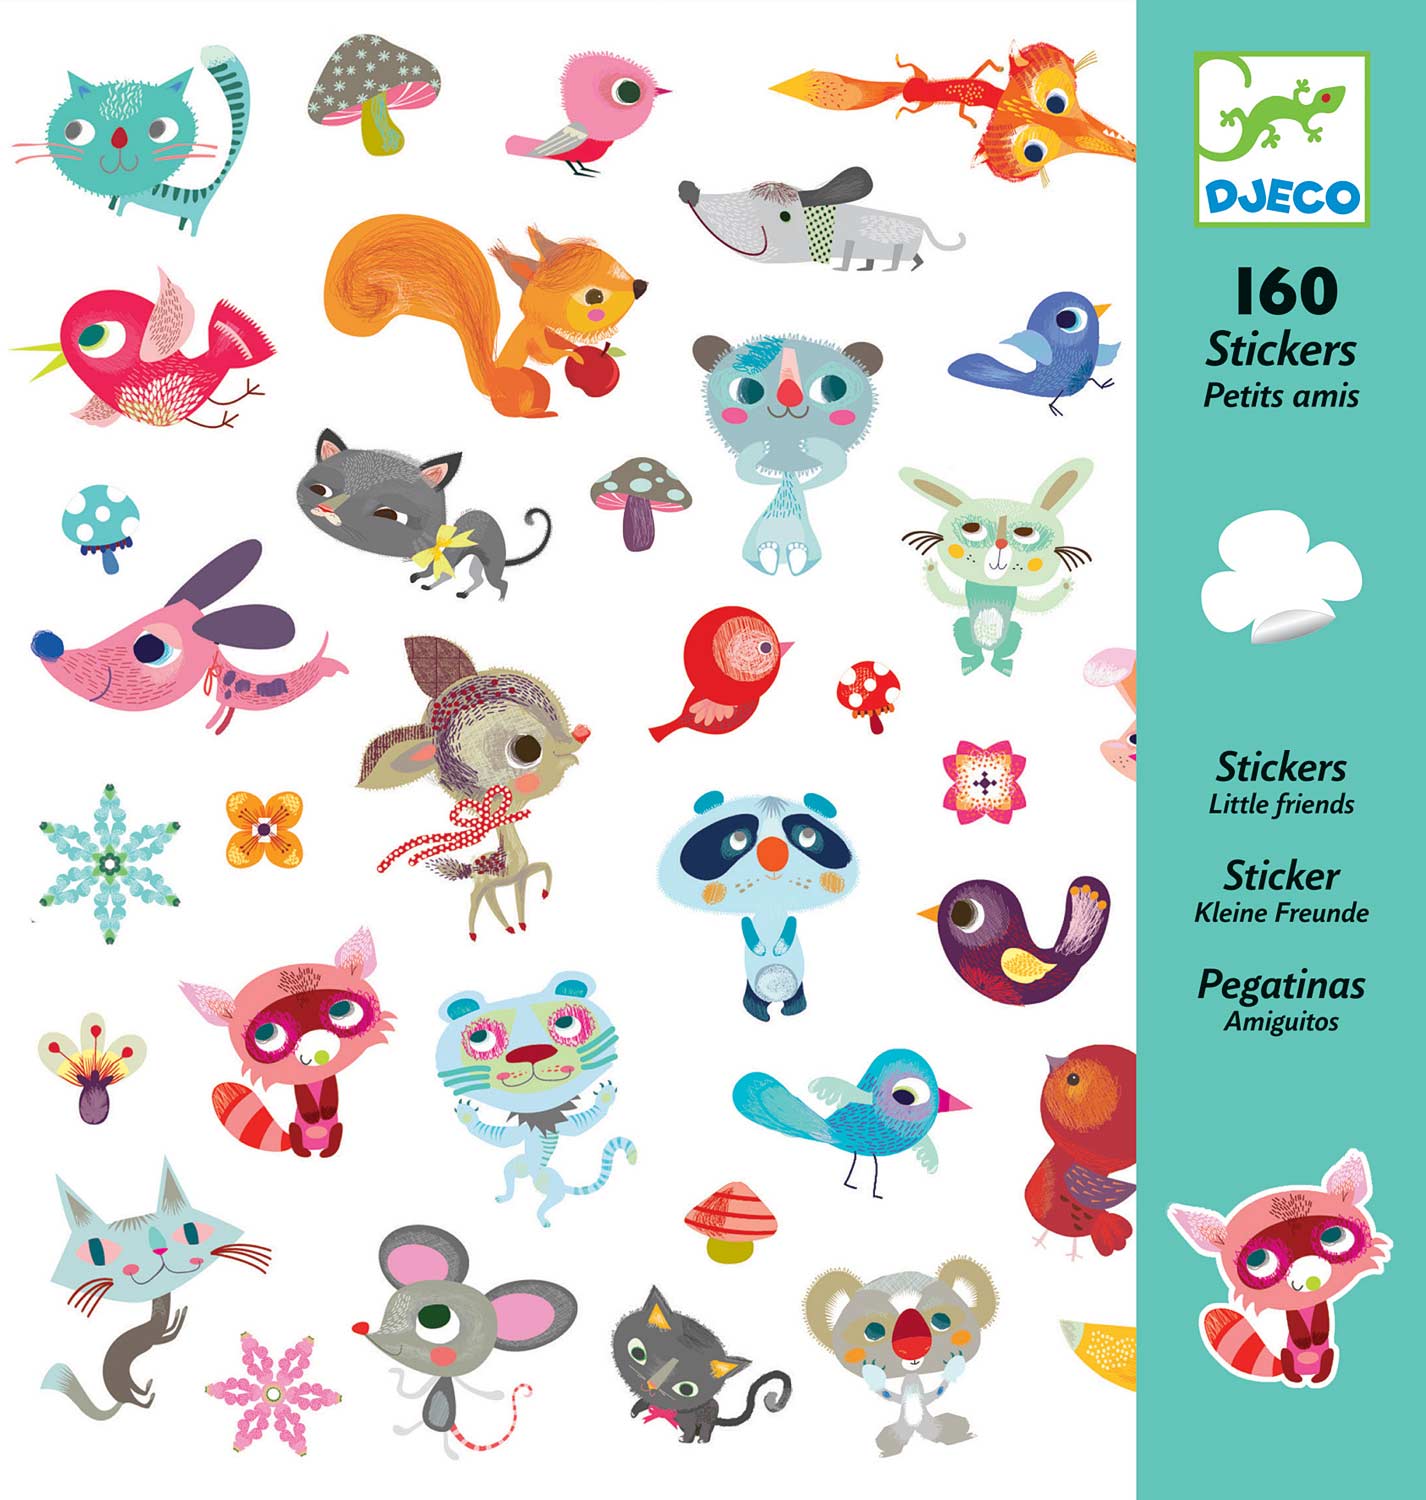 Little Friends Stickers - 160